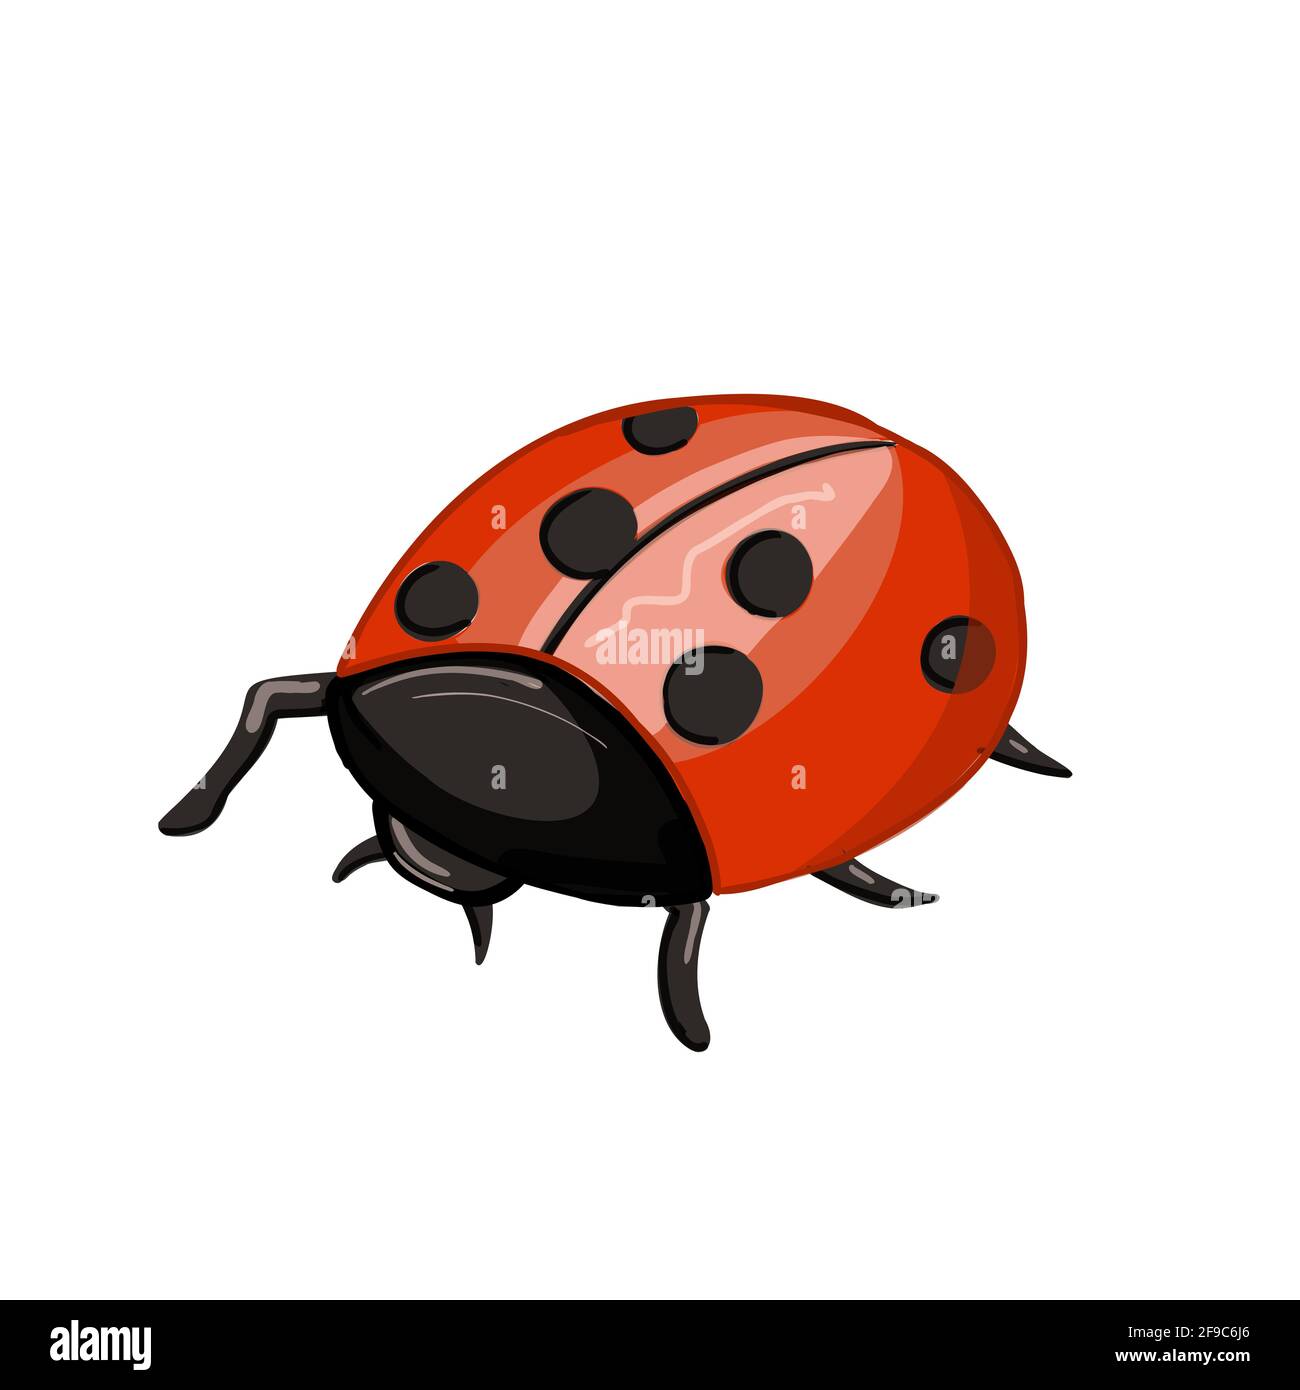 Carino ladybug cartoon. Insetto rosso con macchie nere Illustrazione Vettoriale